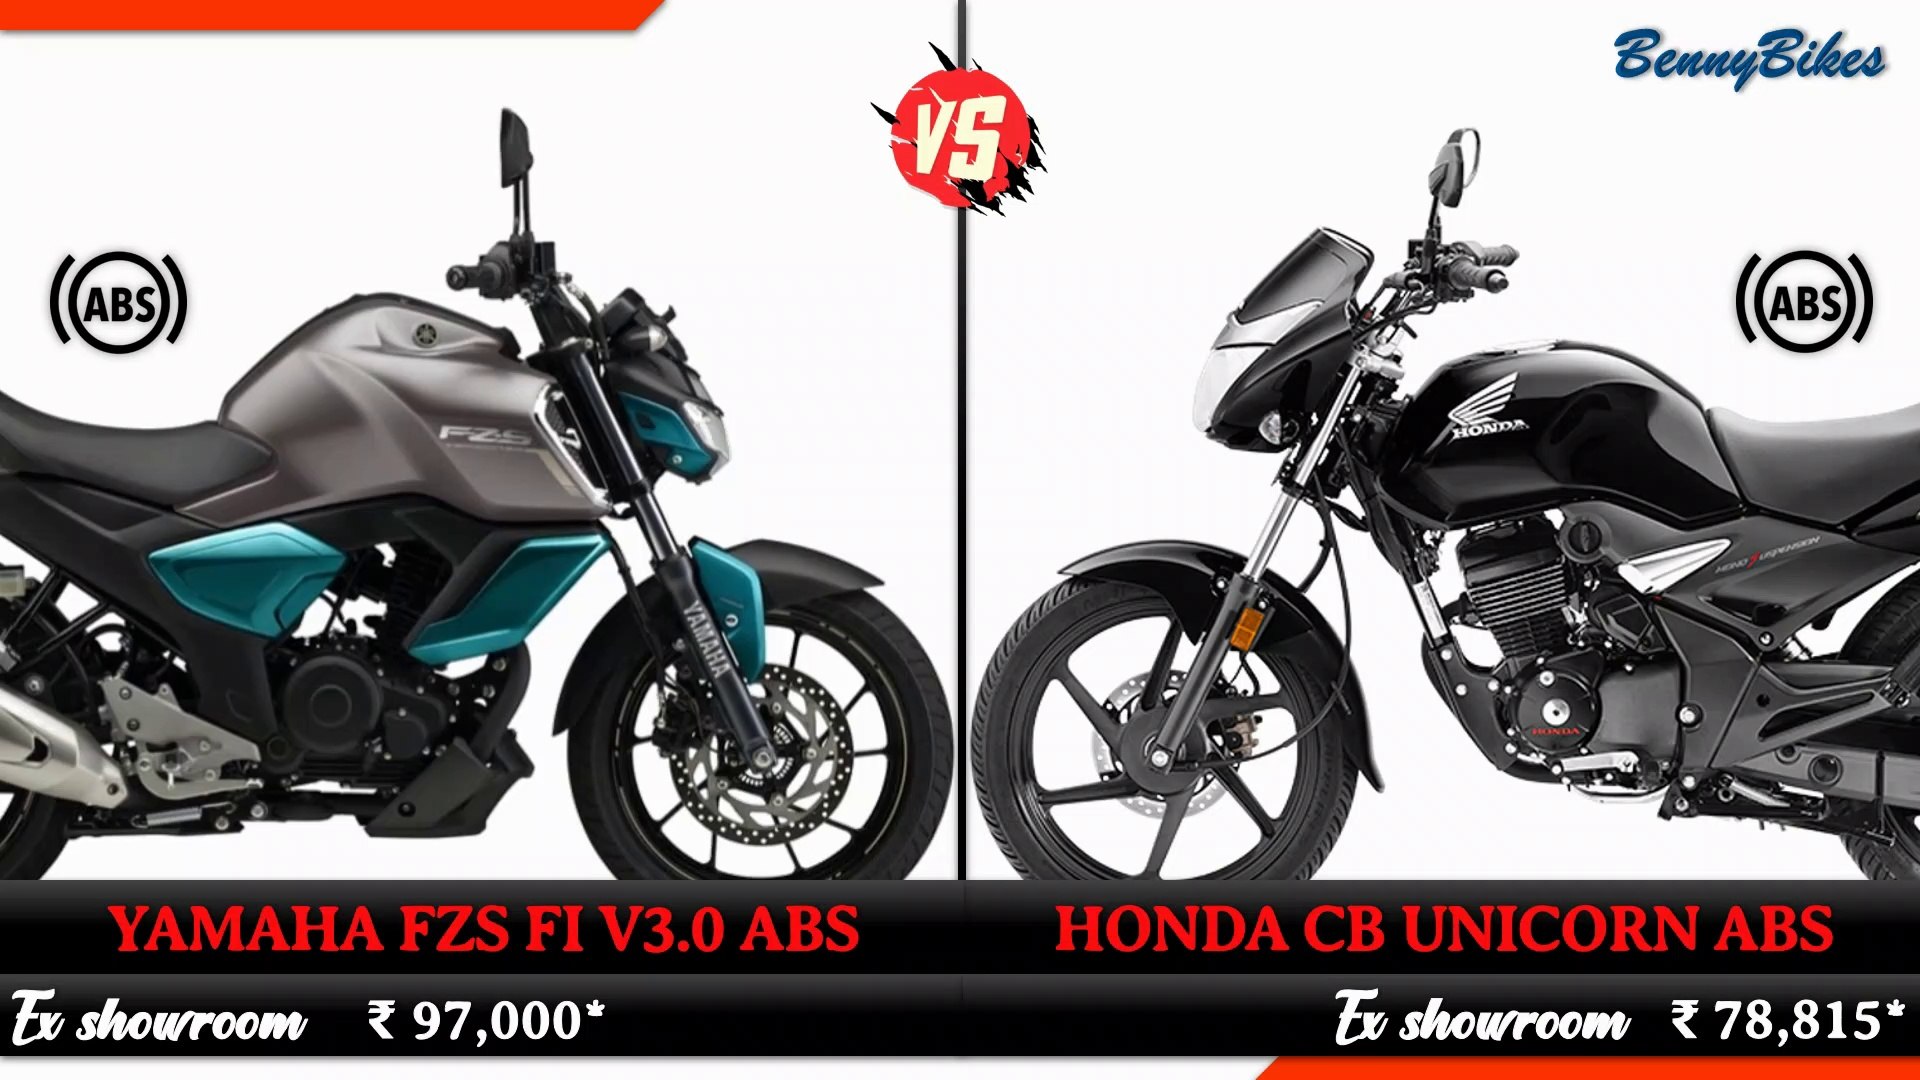 2019 New Yamaha Fzs Fi V3 Abs Vs 2019 All New Honda Cb Unicorn Abs